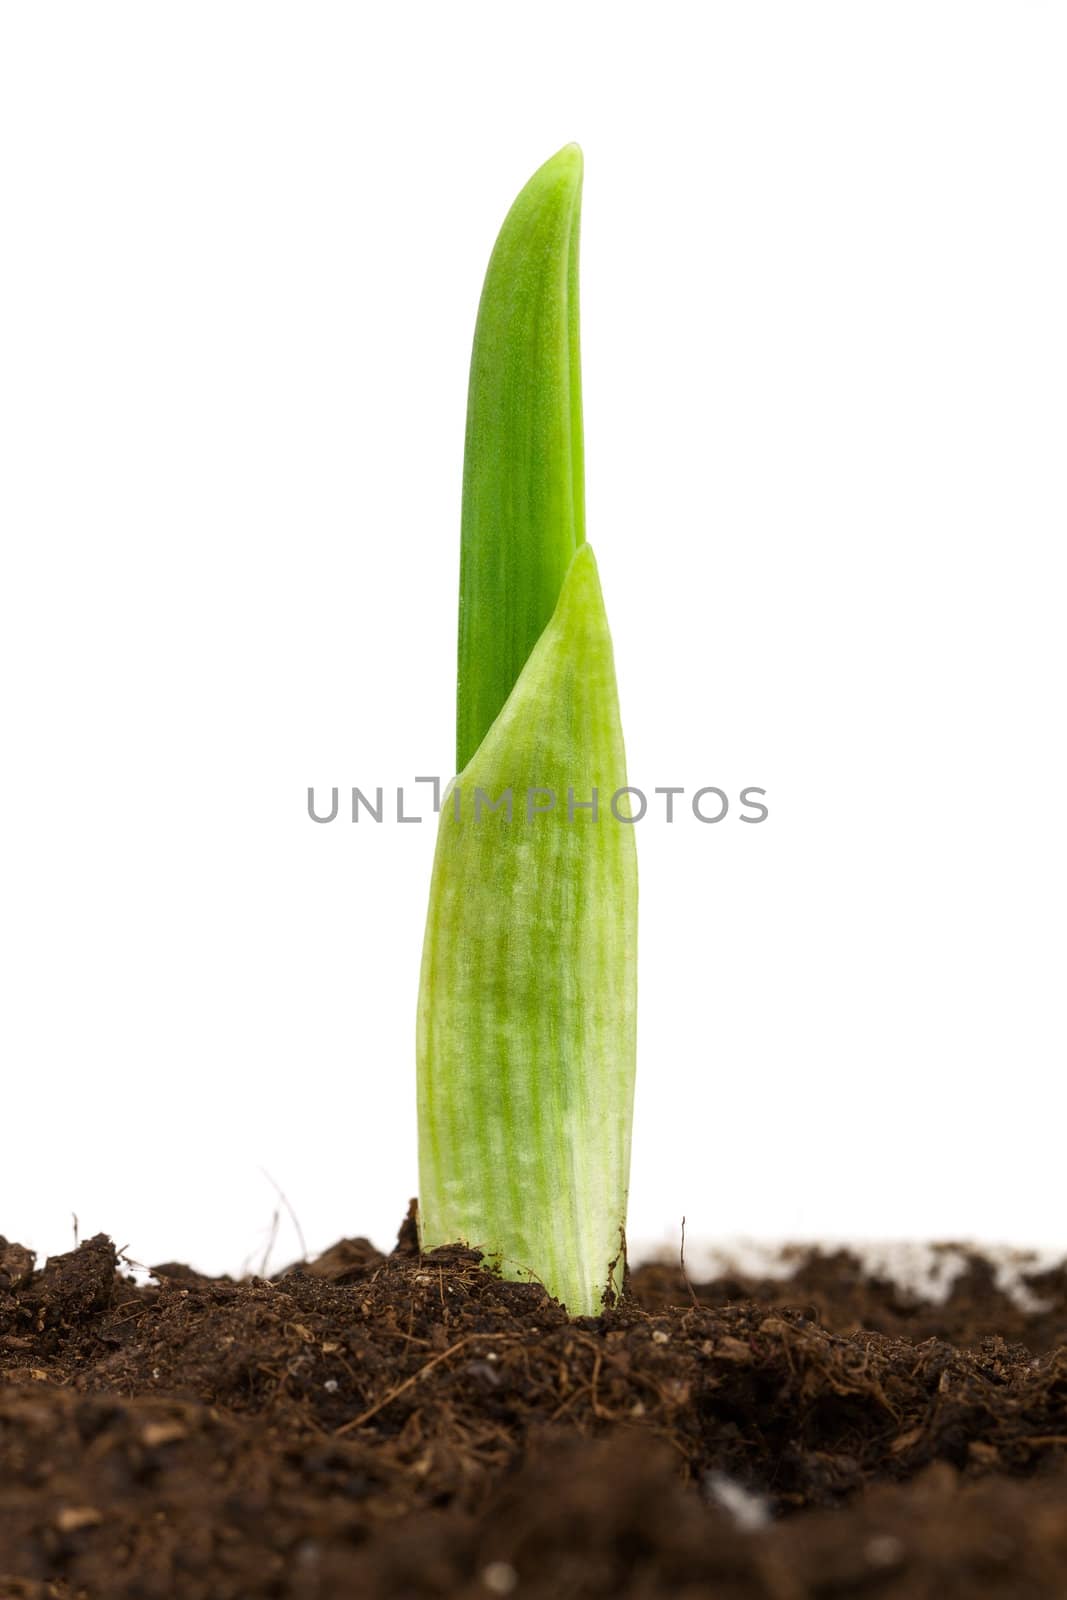 Garlic plant by vtorous